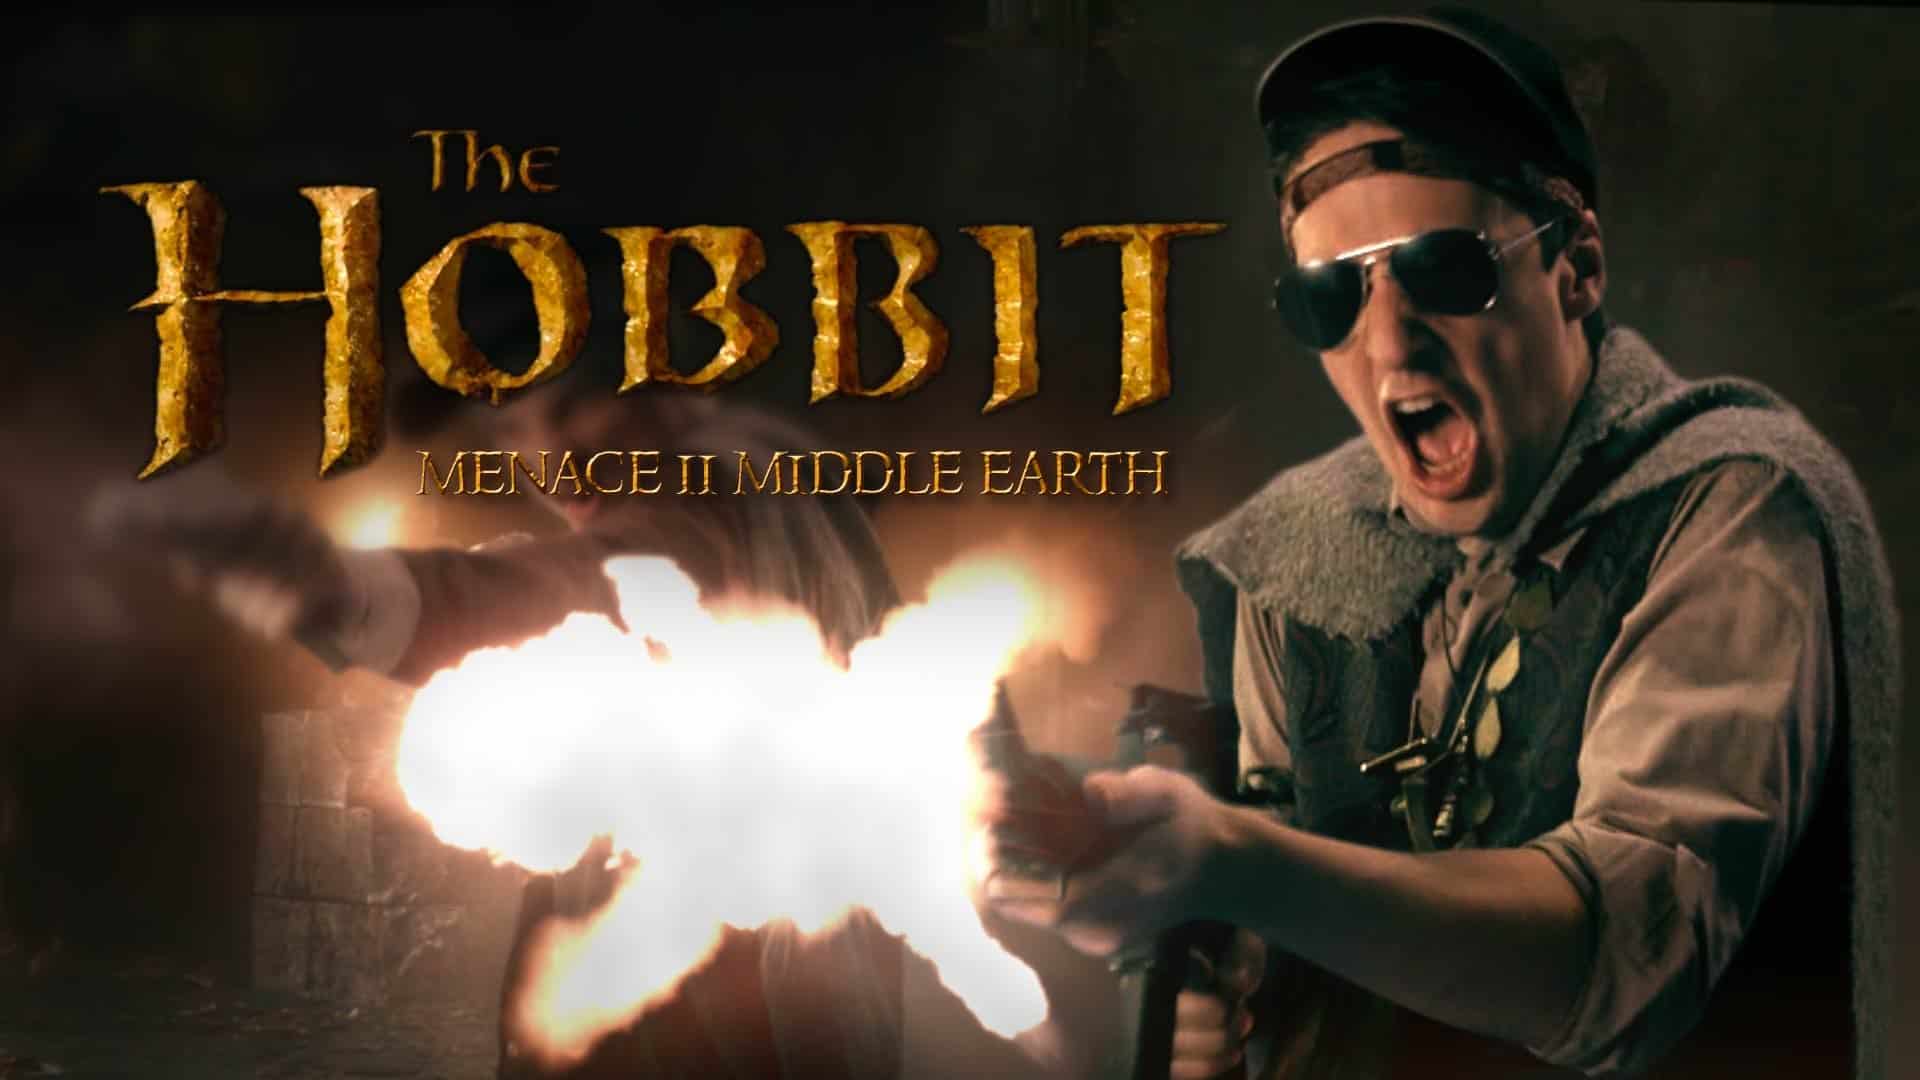 Gangsta Hobbits - Minaccia II Terra di Mezzo: una battaglia rap tra Hobbit